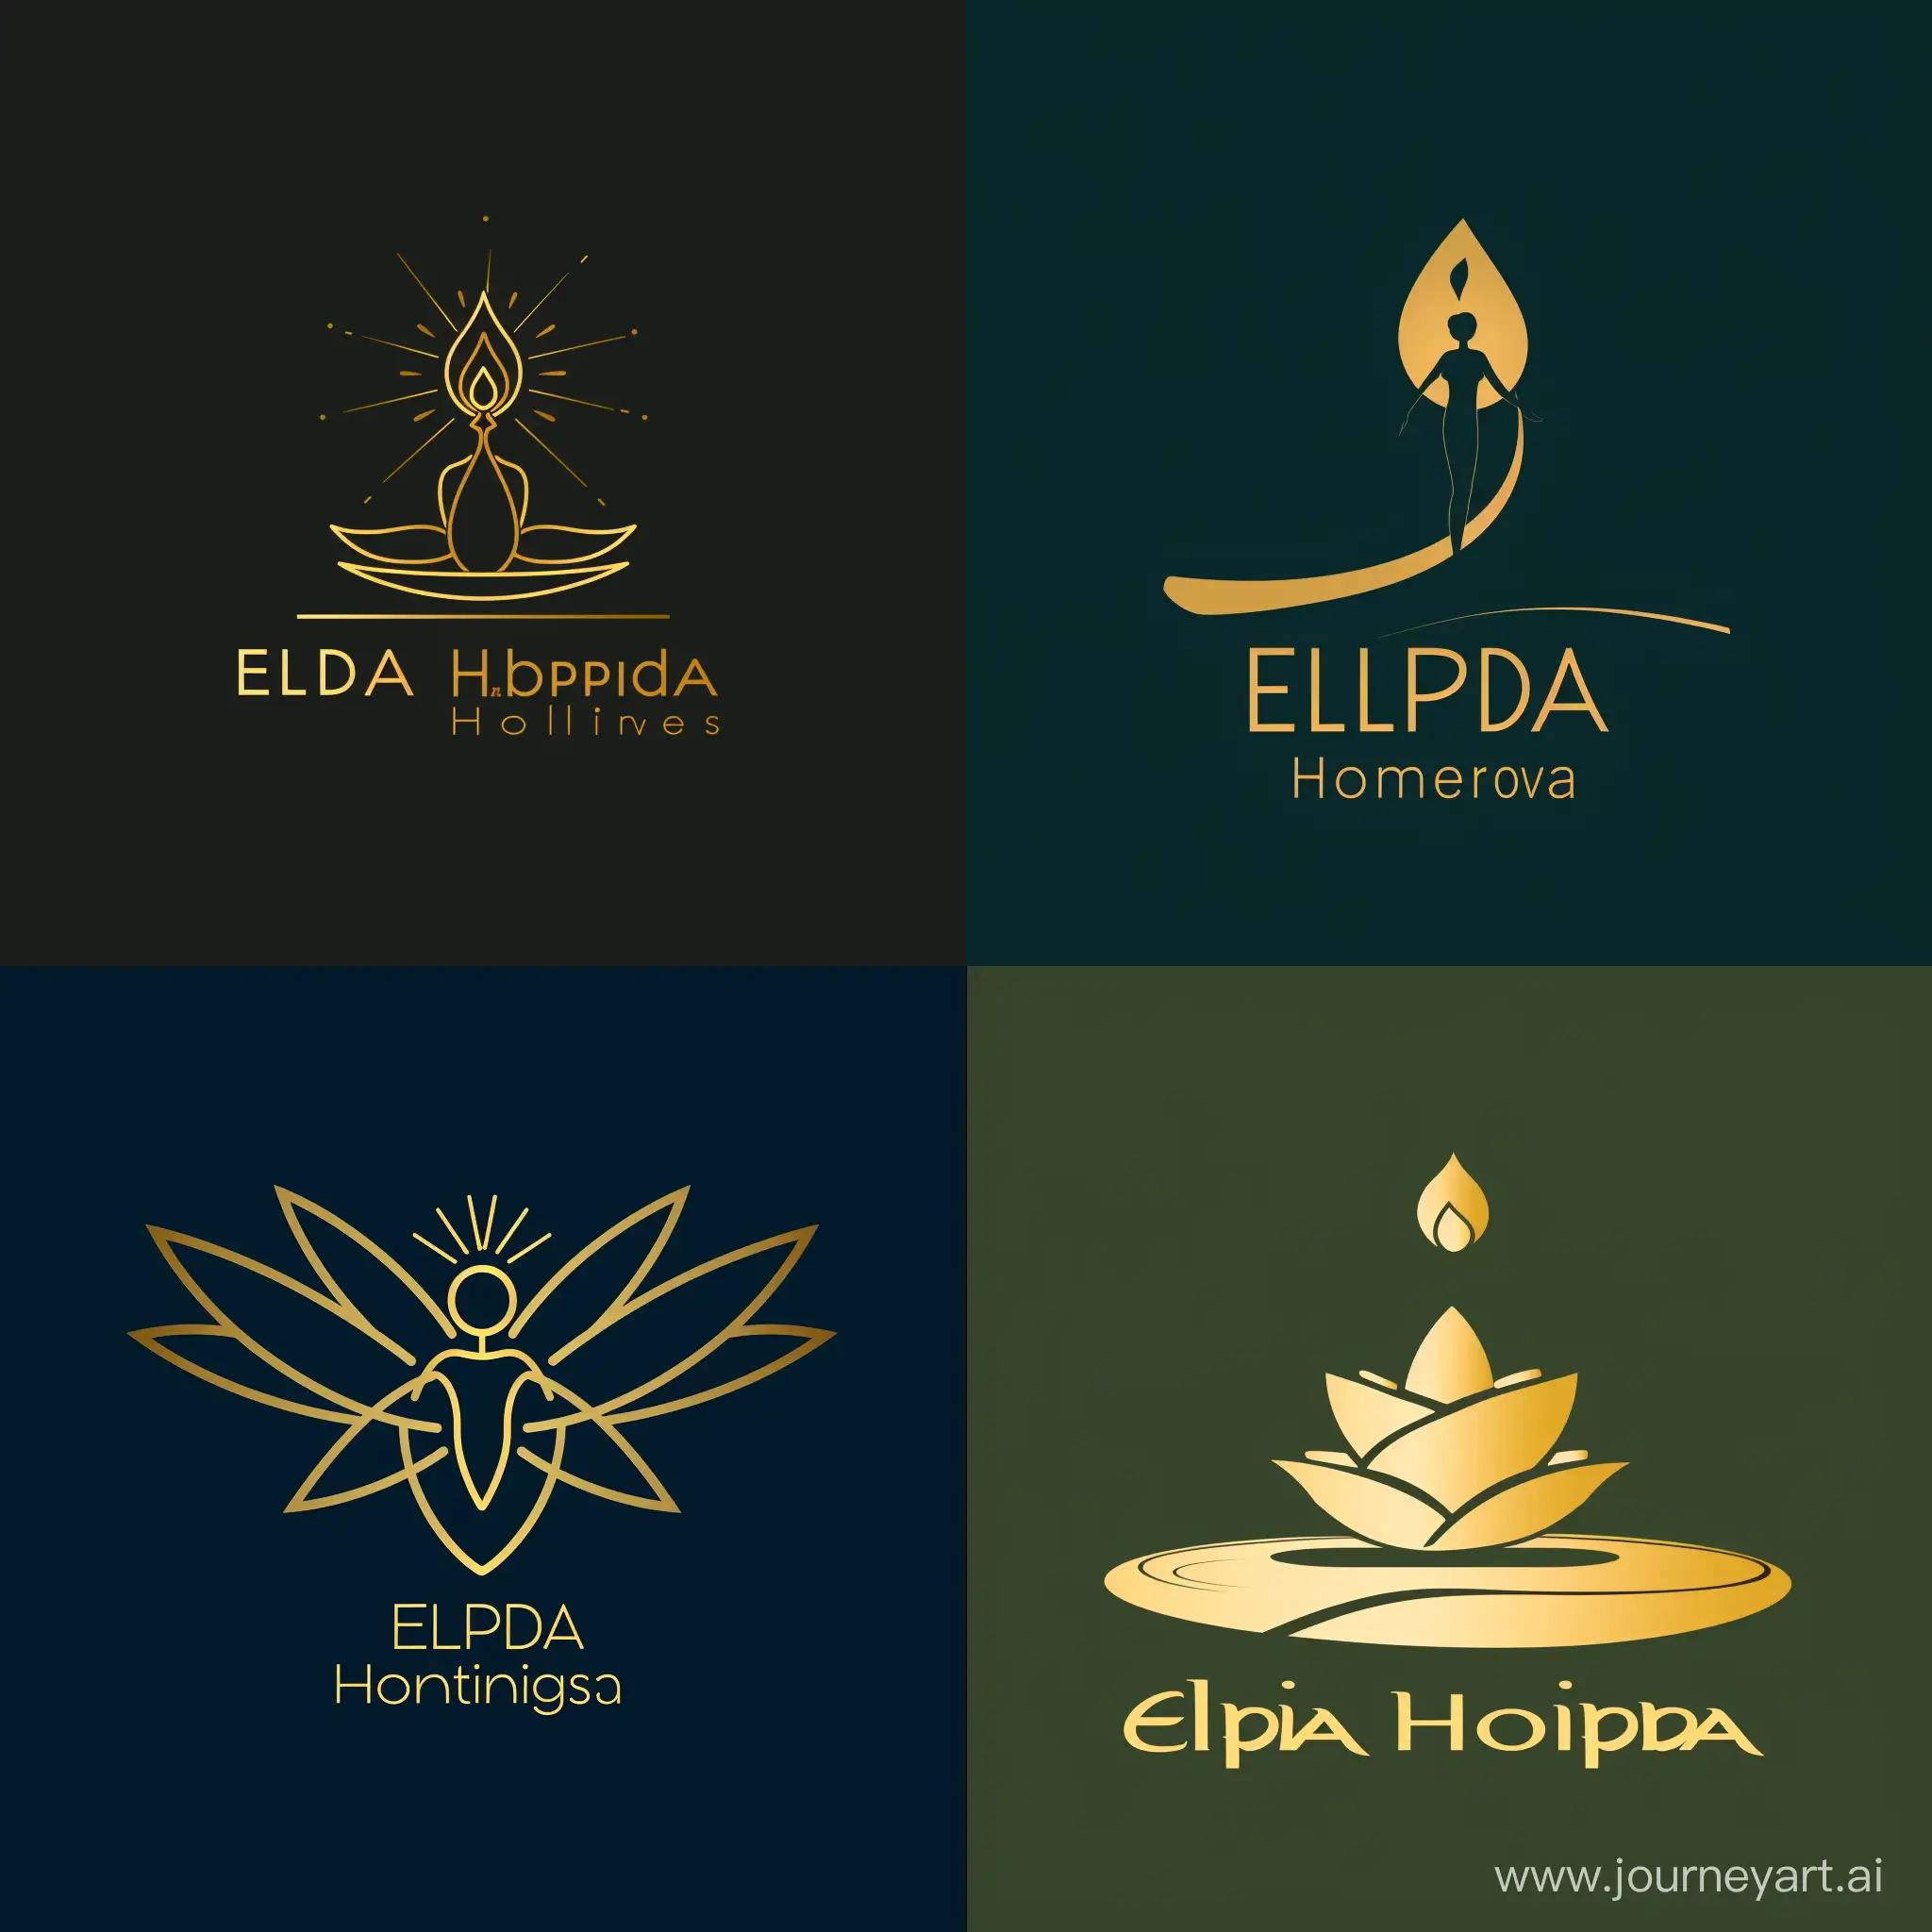 Logo for hotel rental website named "Elpida Holidays". Minimalist, professional, elegant. It should depict hope in symbil